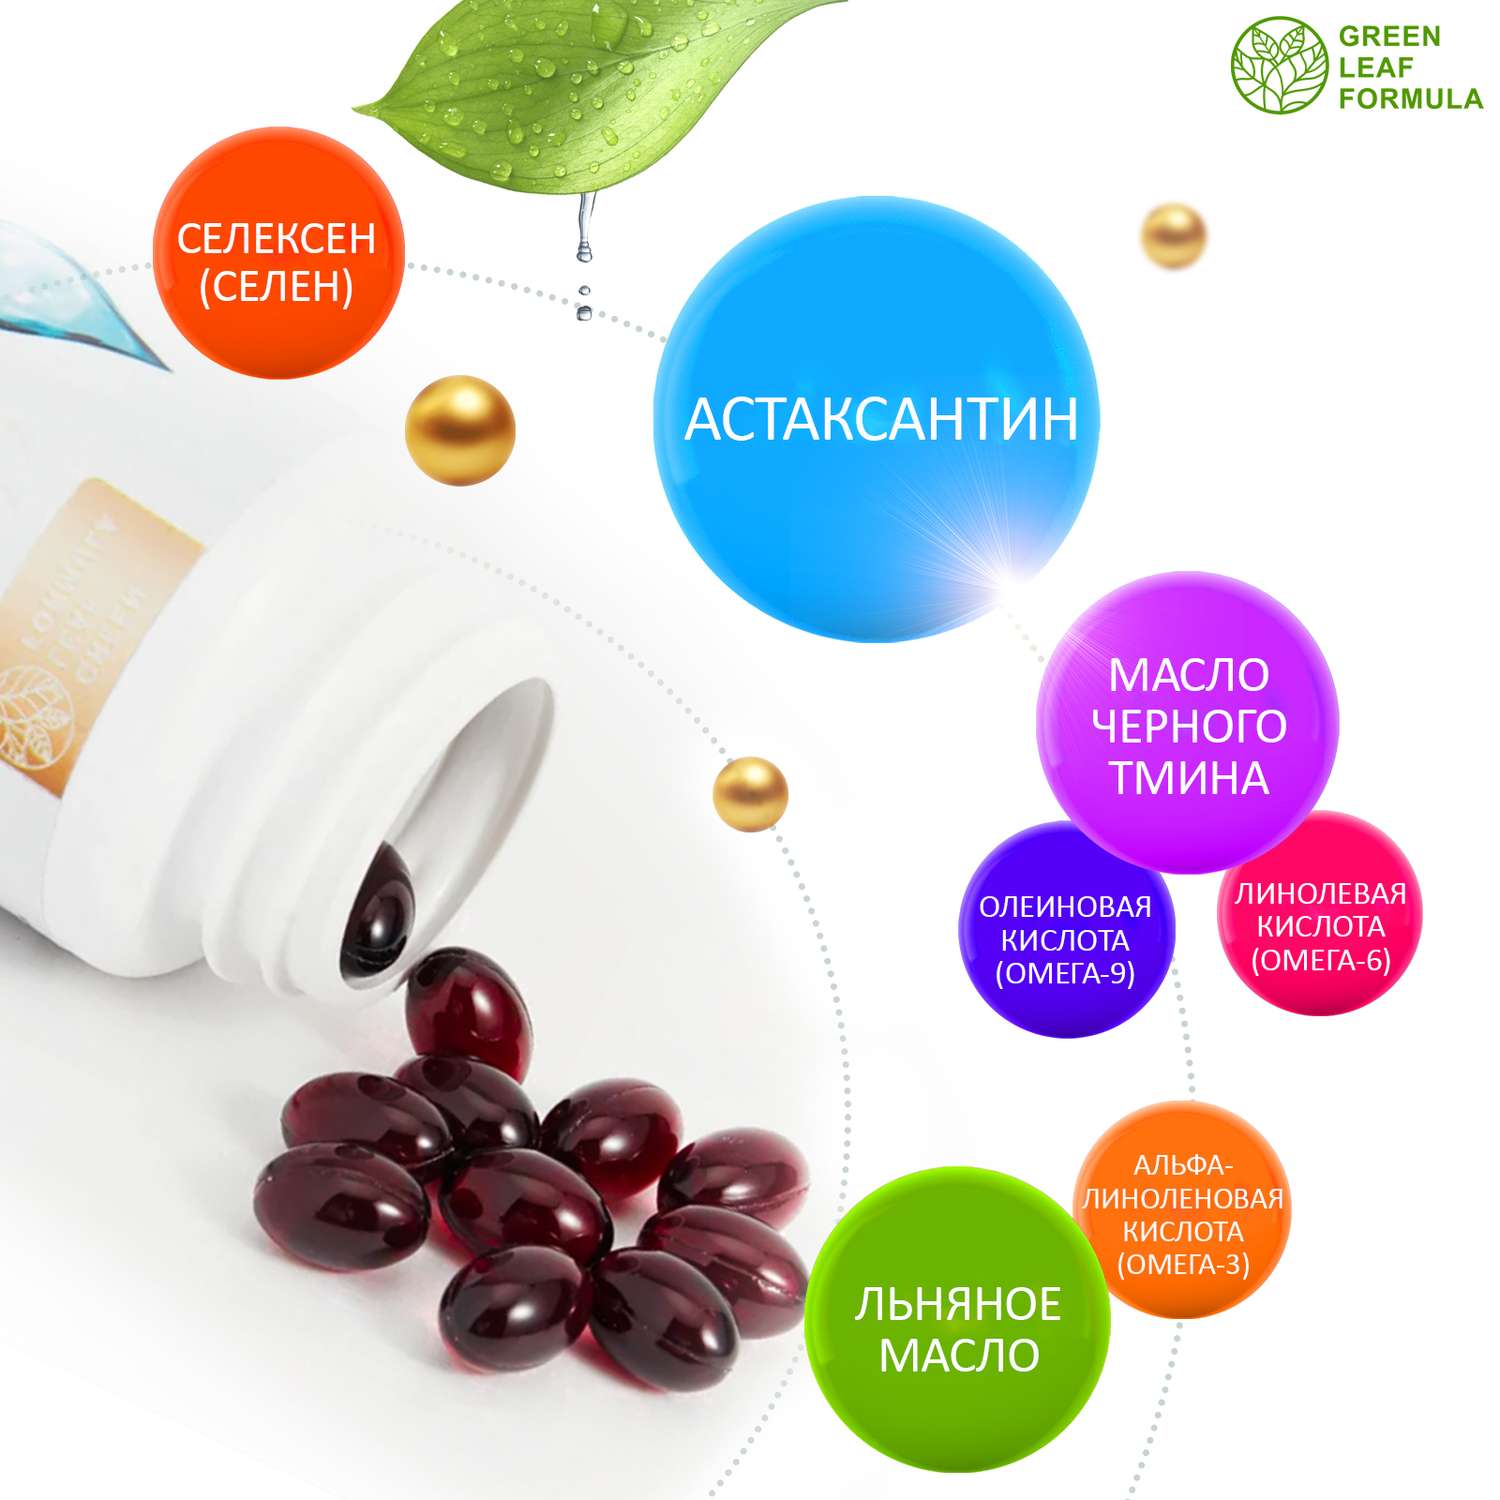 Астаксантин антиоксиданты Green Leaf Formula витамины для глаз кожи волос и ногтей селен и омега 3-6-9 для сердца 2 банки - фото 4